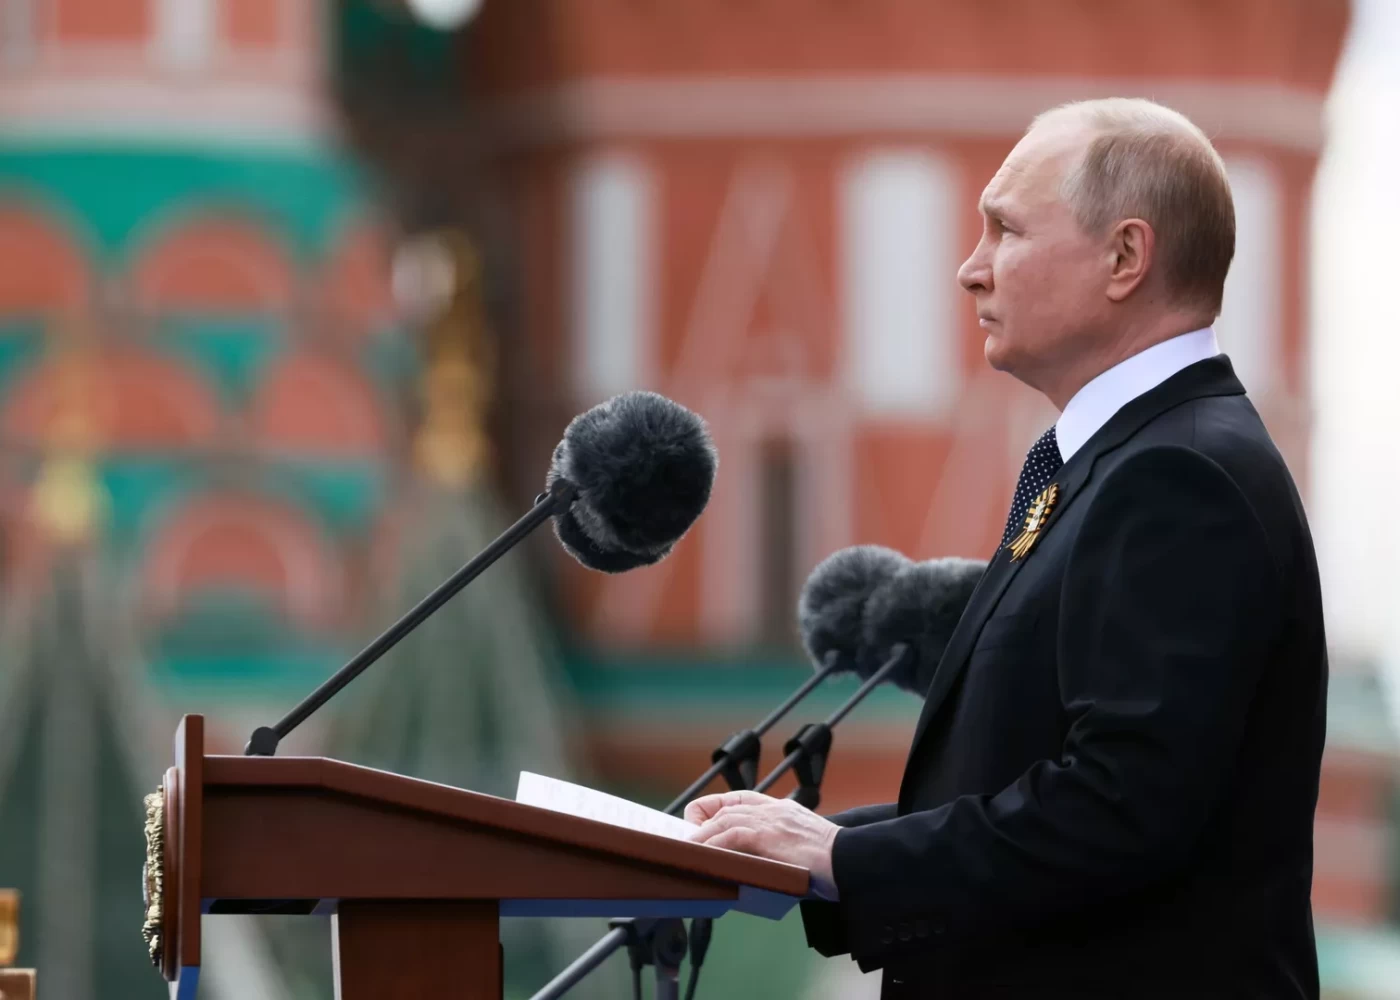 "Rusiya qlobal toqquşmanın qarşısını almaq üçün əlindən gələni edəcək" - Putin